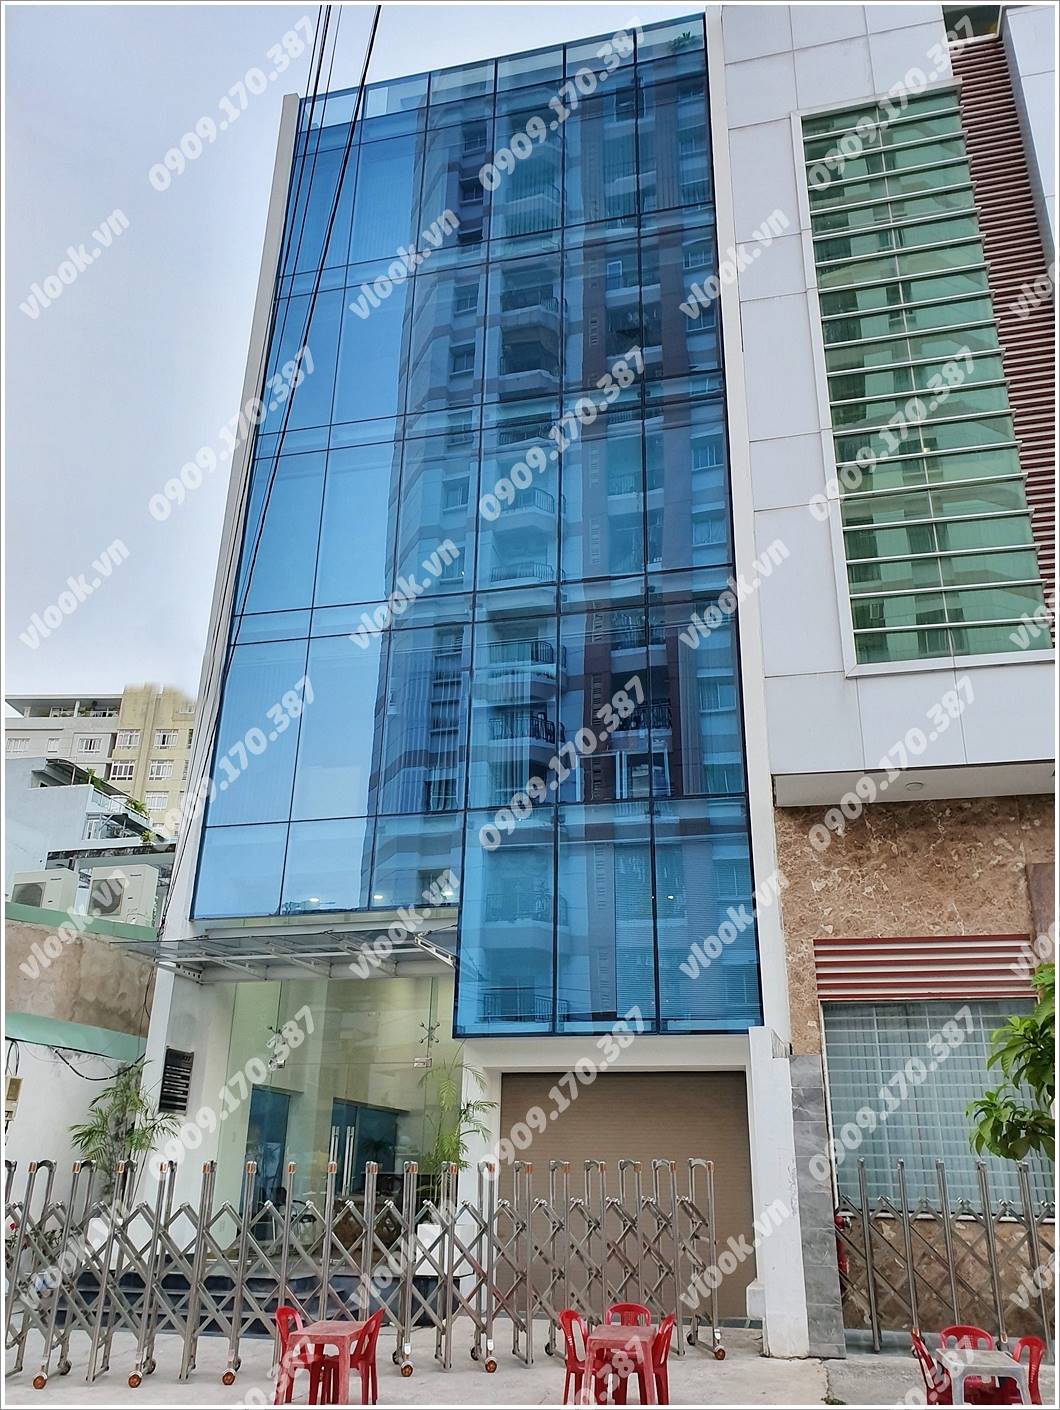 Mặt trước toàn cảnh oà cao ốc văn phòng cho thuê UVK Building, đường Ung Văn Khiêm, quận Bình Thạnh, TP.HCM - vlook.vn